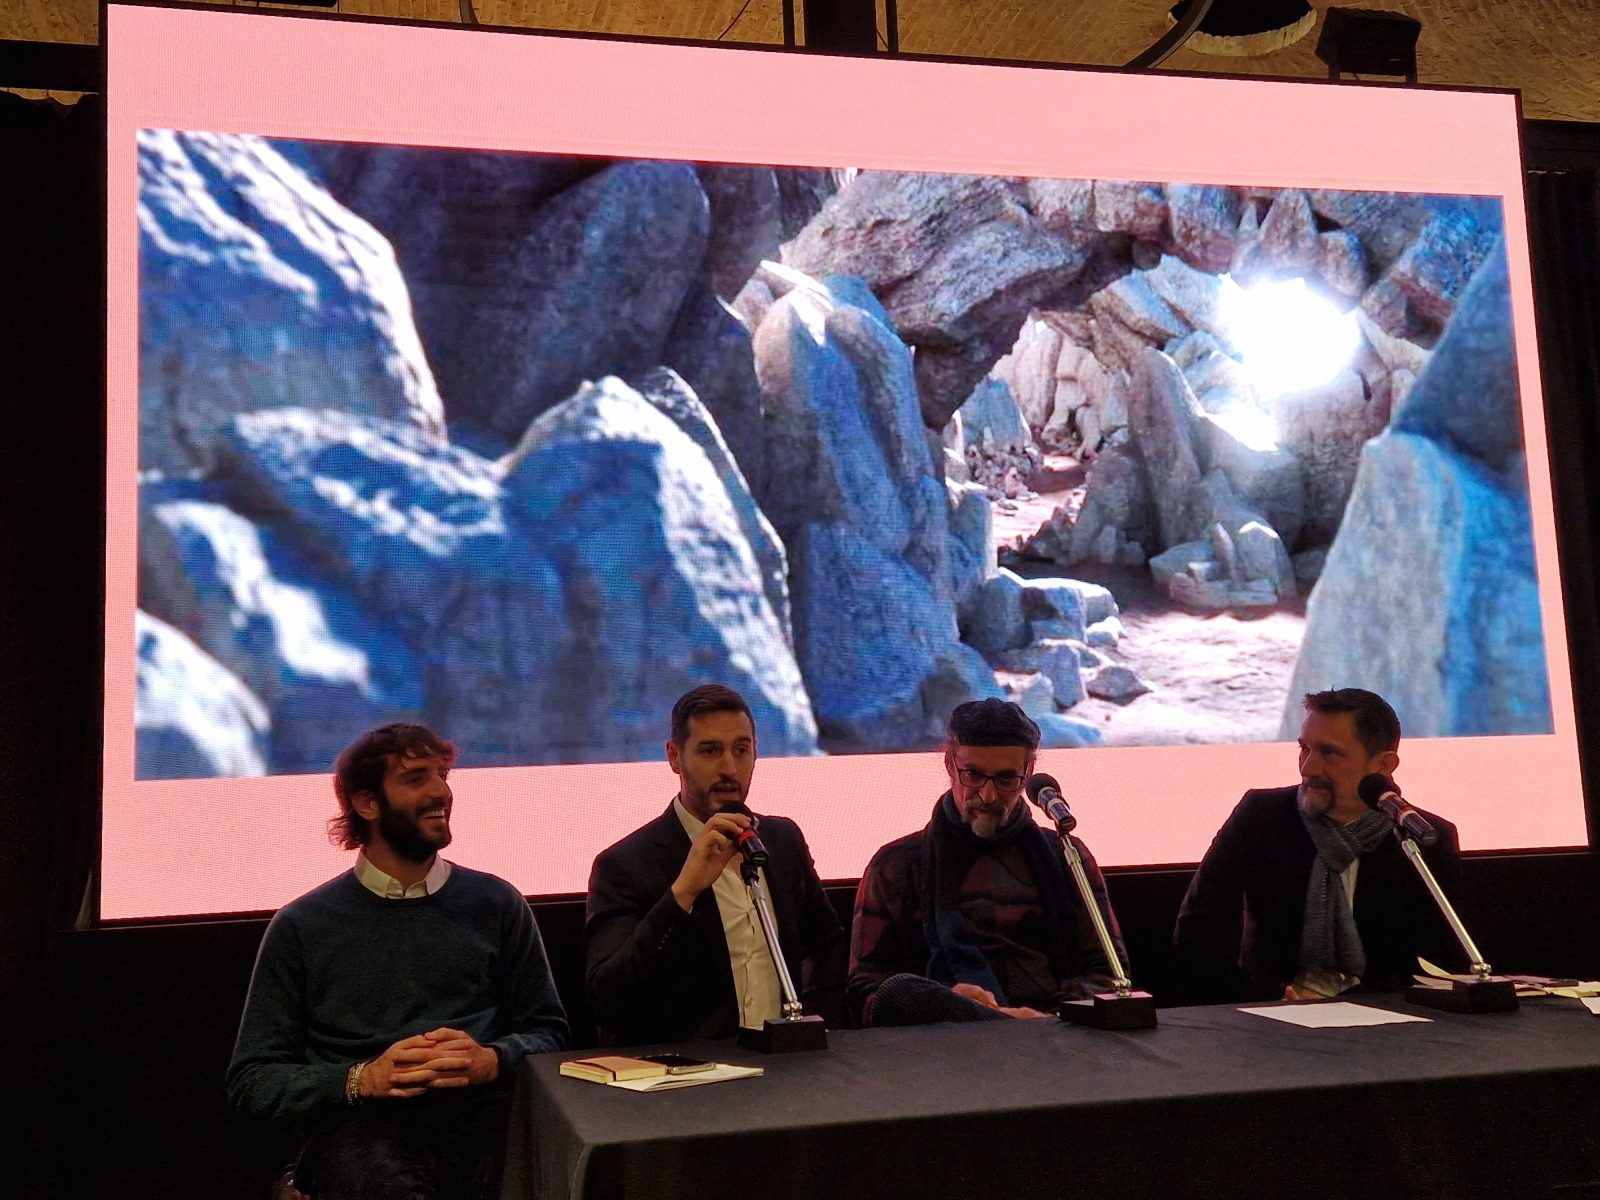 Conferenza al Torino Film Festival con presentazione de la Divina Commedia VR presenti Giovanni Verreschi, Federico Basso, Alessandro Cavallaro